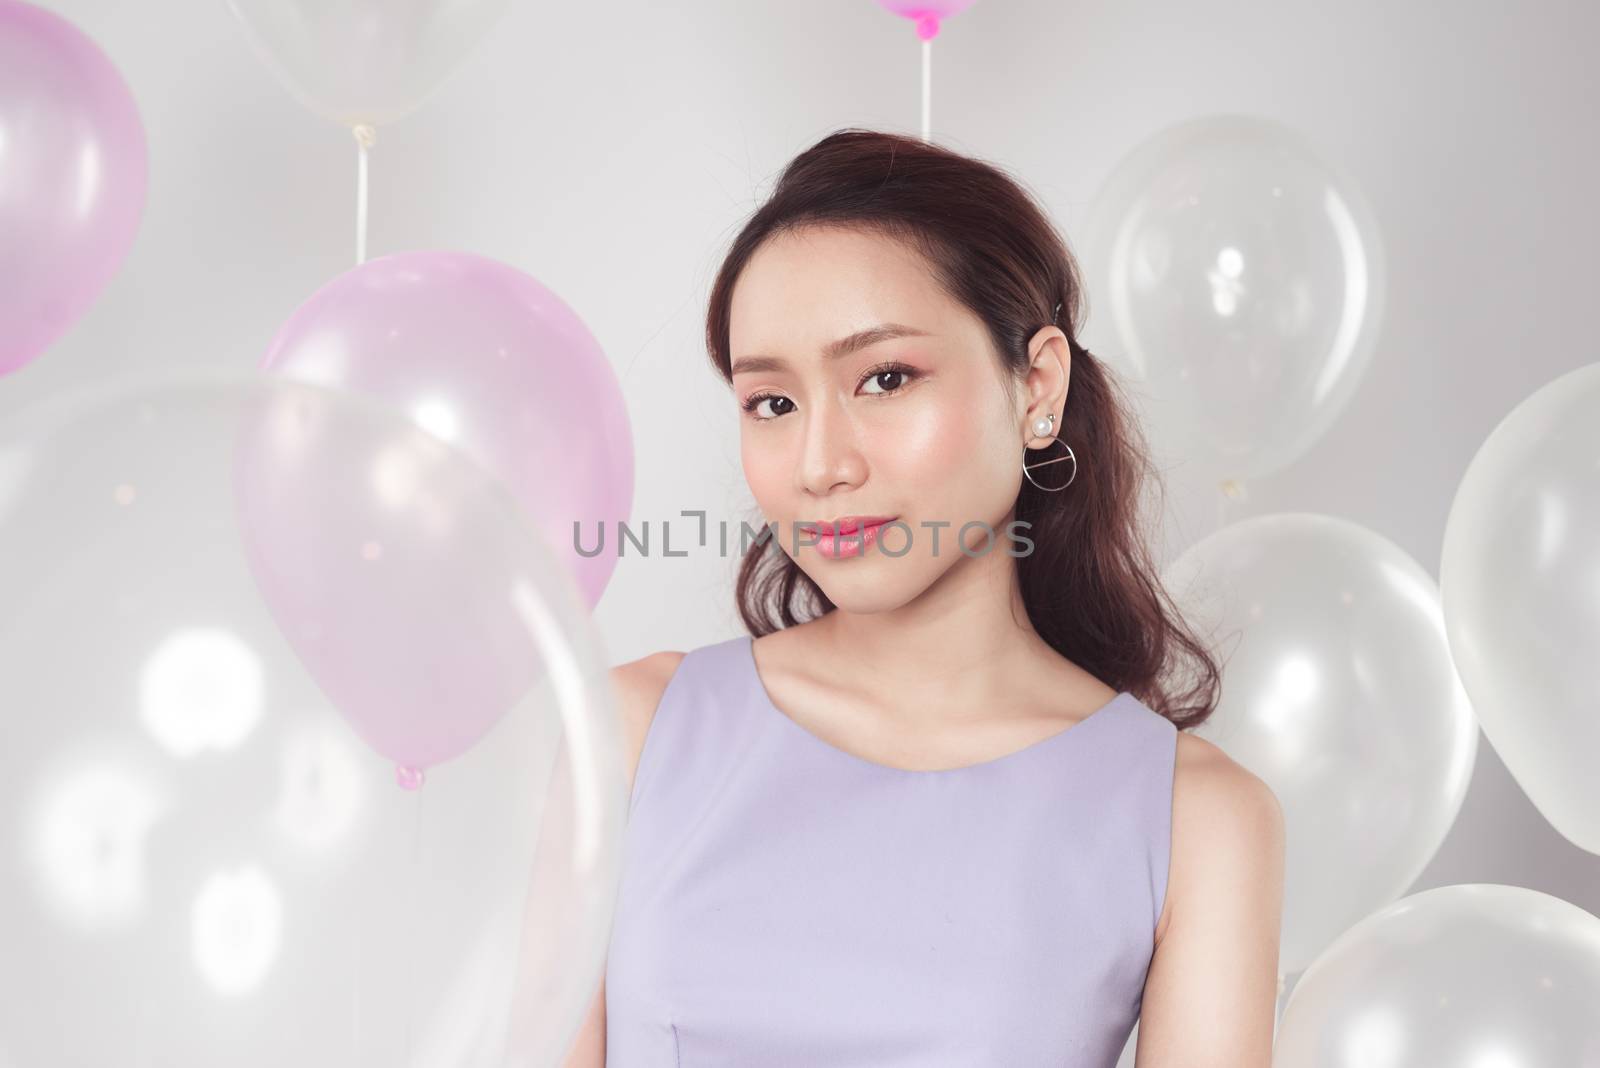 Stylish beautiful asian woman with pastel balloons